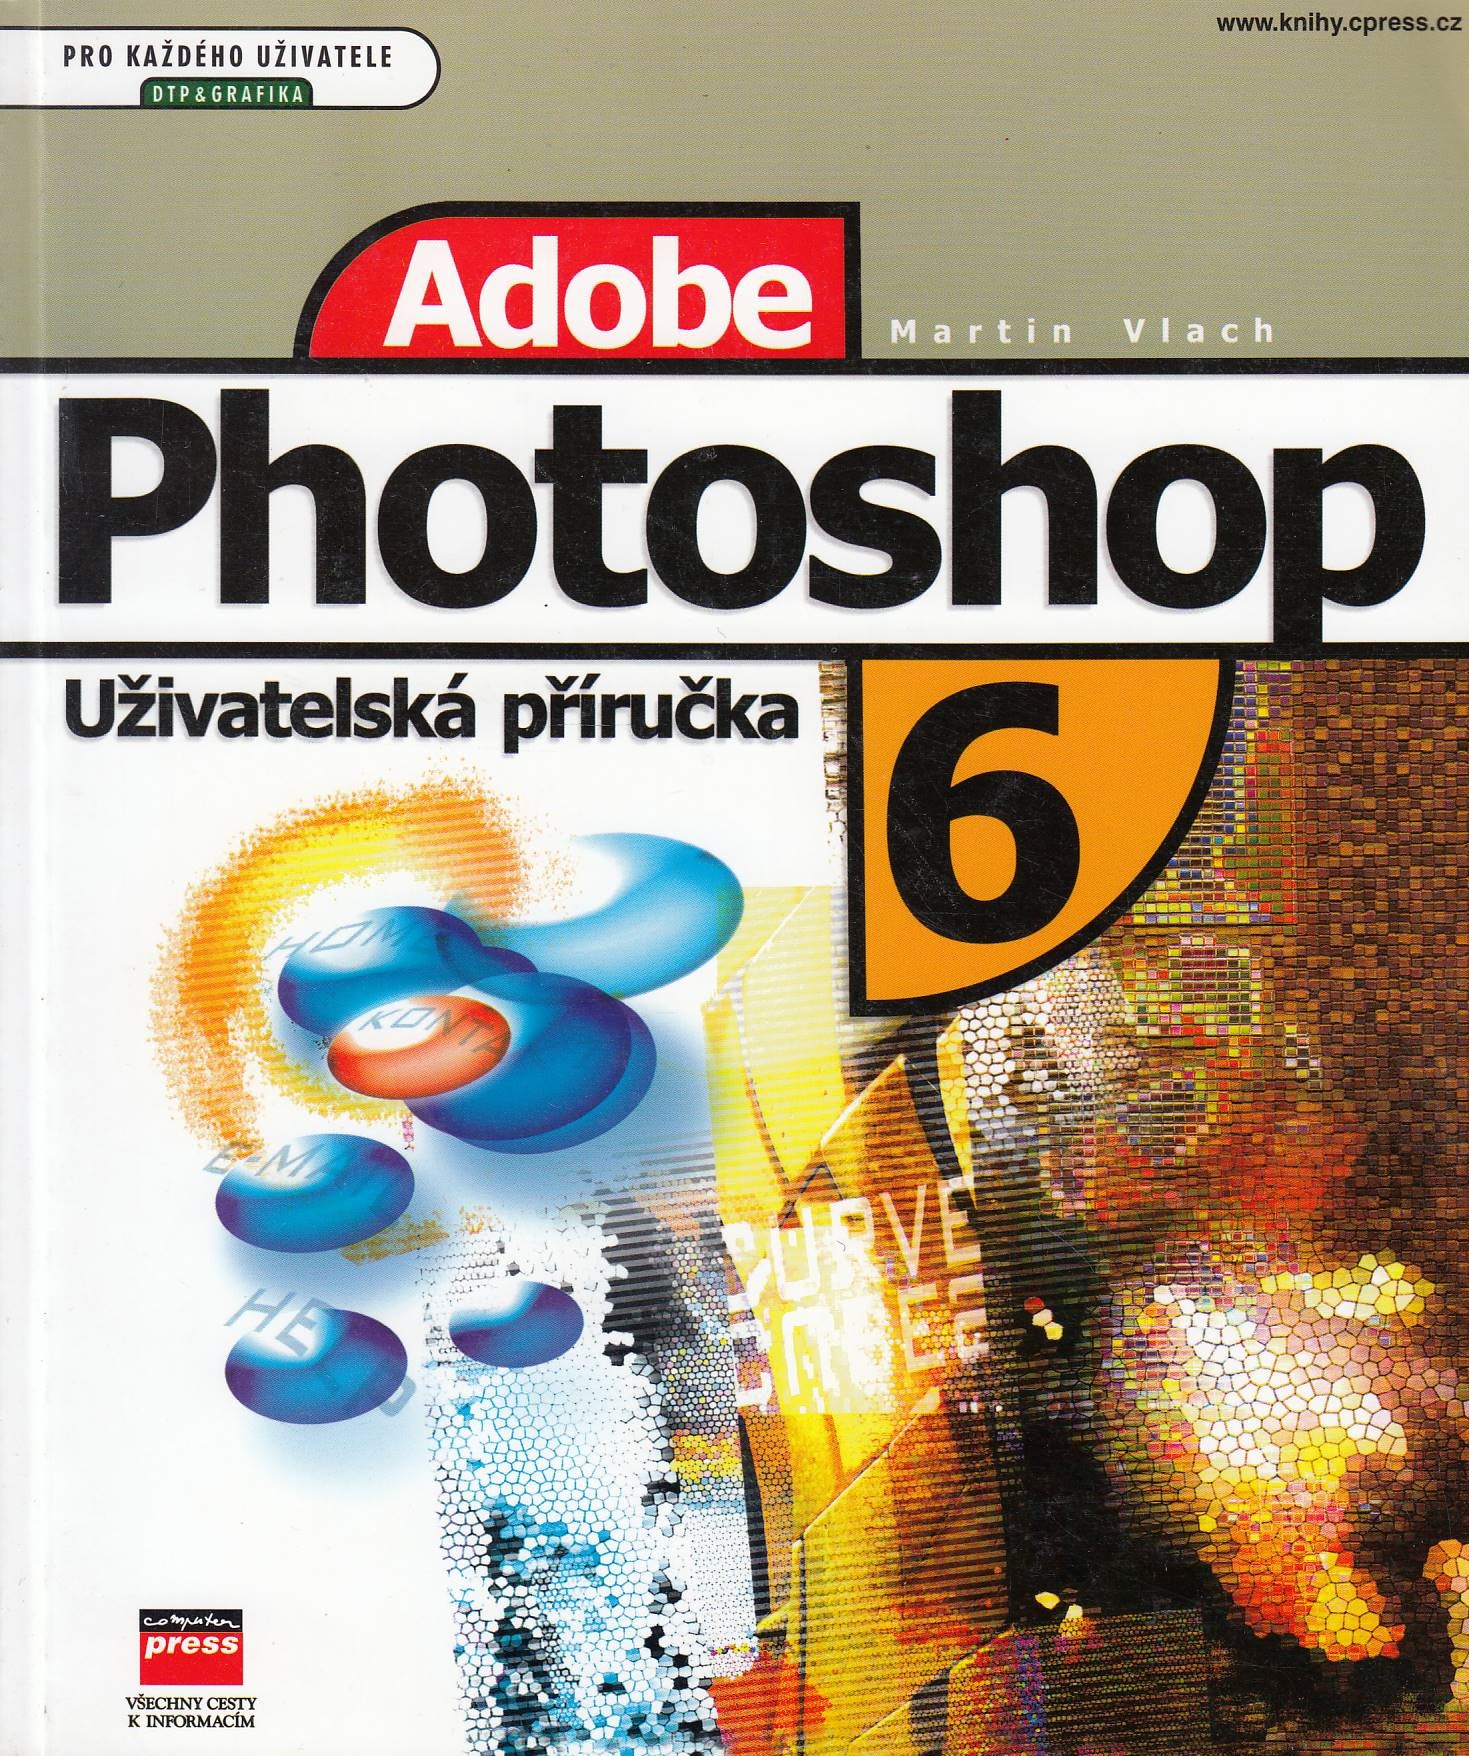 Adobe Photoshop - Uživatelská příručka 6